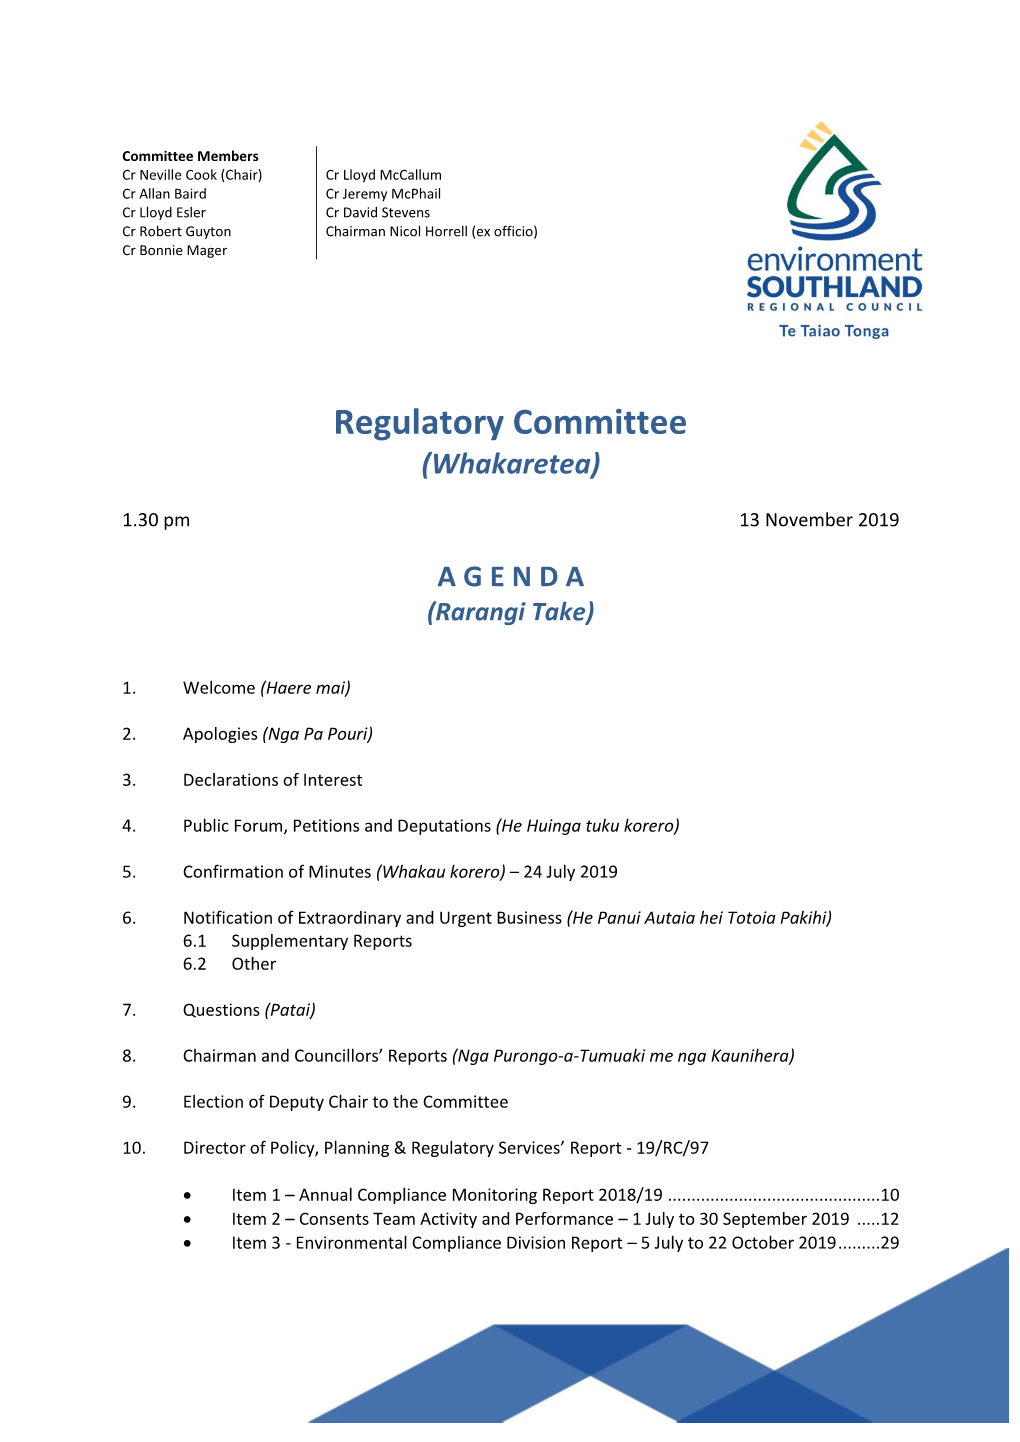 Regulatory Committee Agenda.Docx